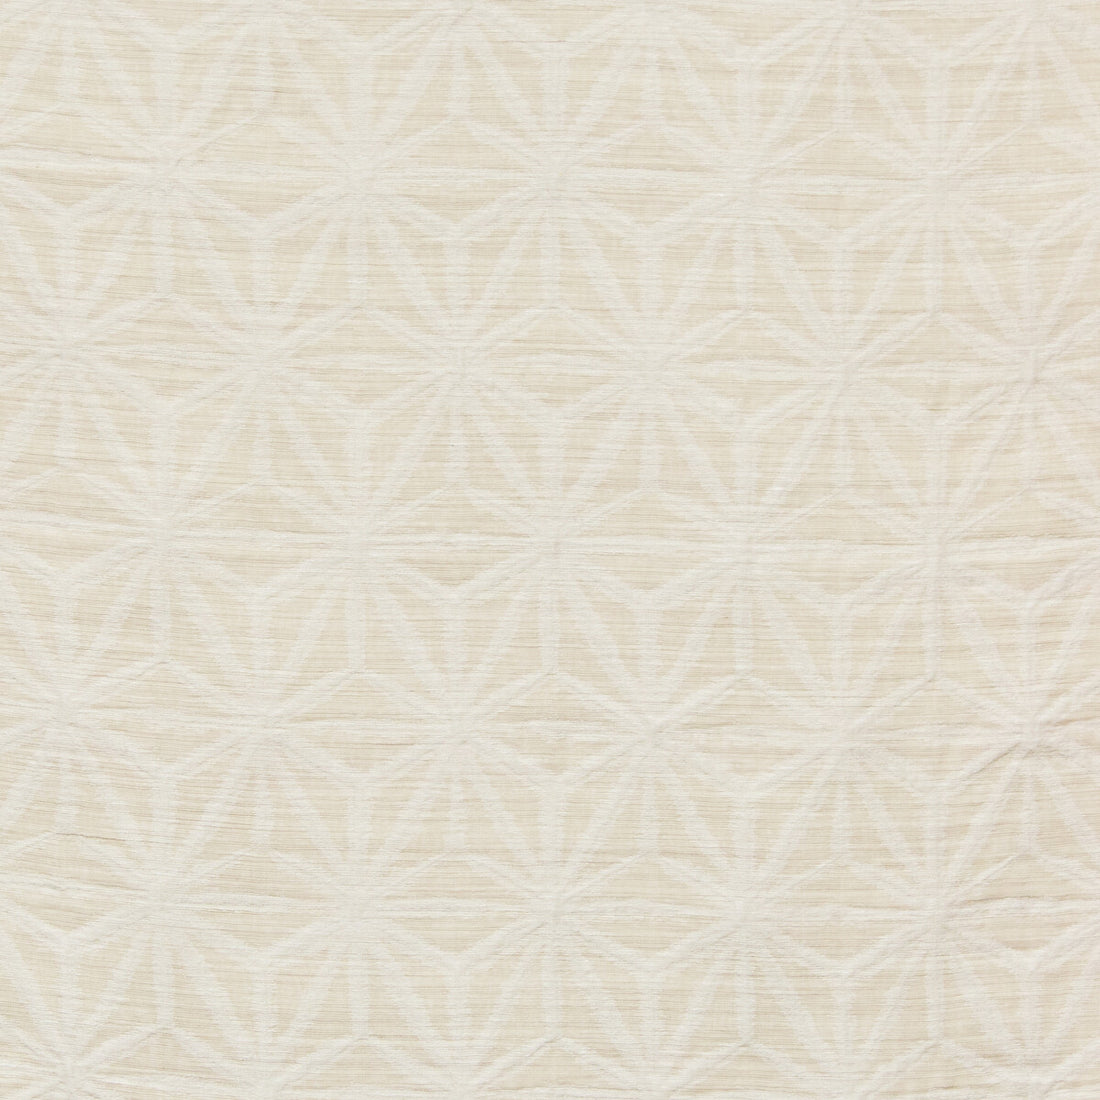 Kravet Basics fabric in 4710-16 color - pattern 4710.16.0 - by Kravet Basics